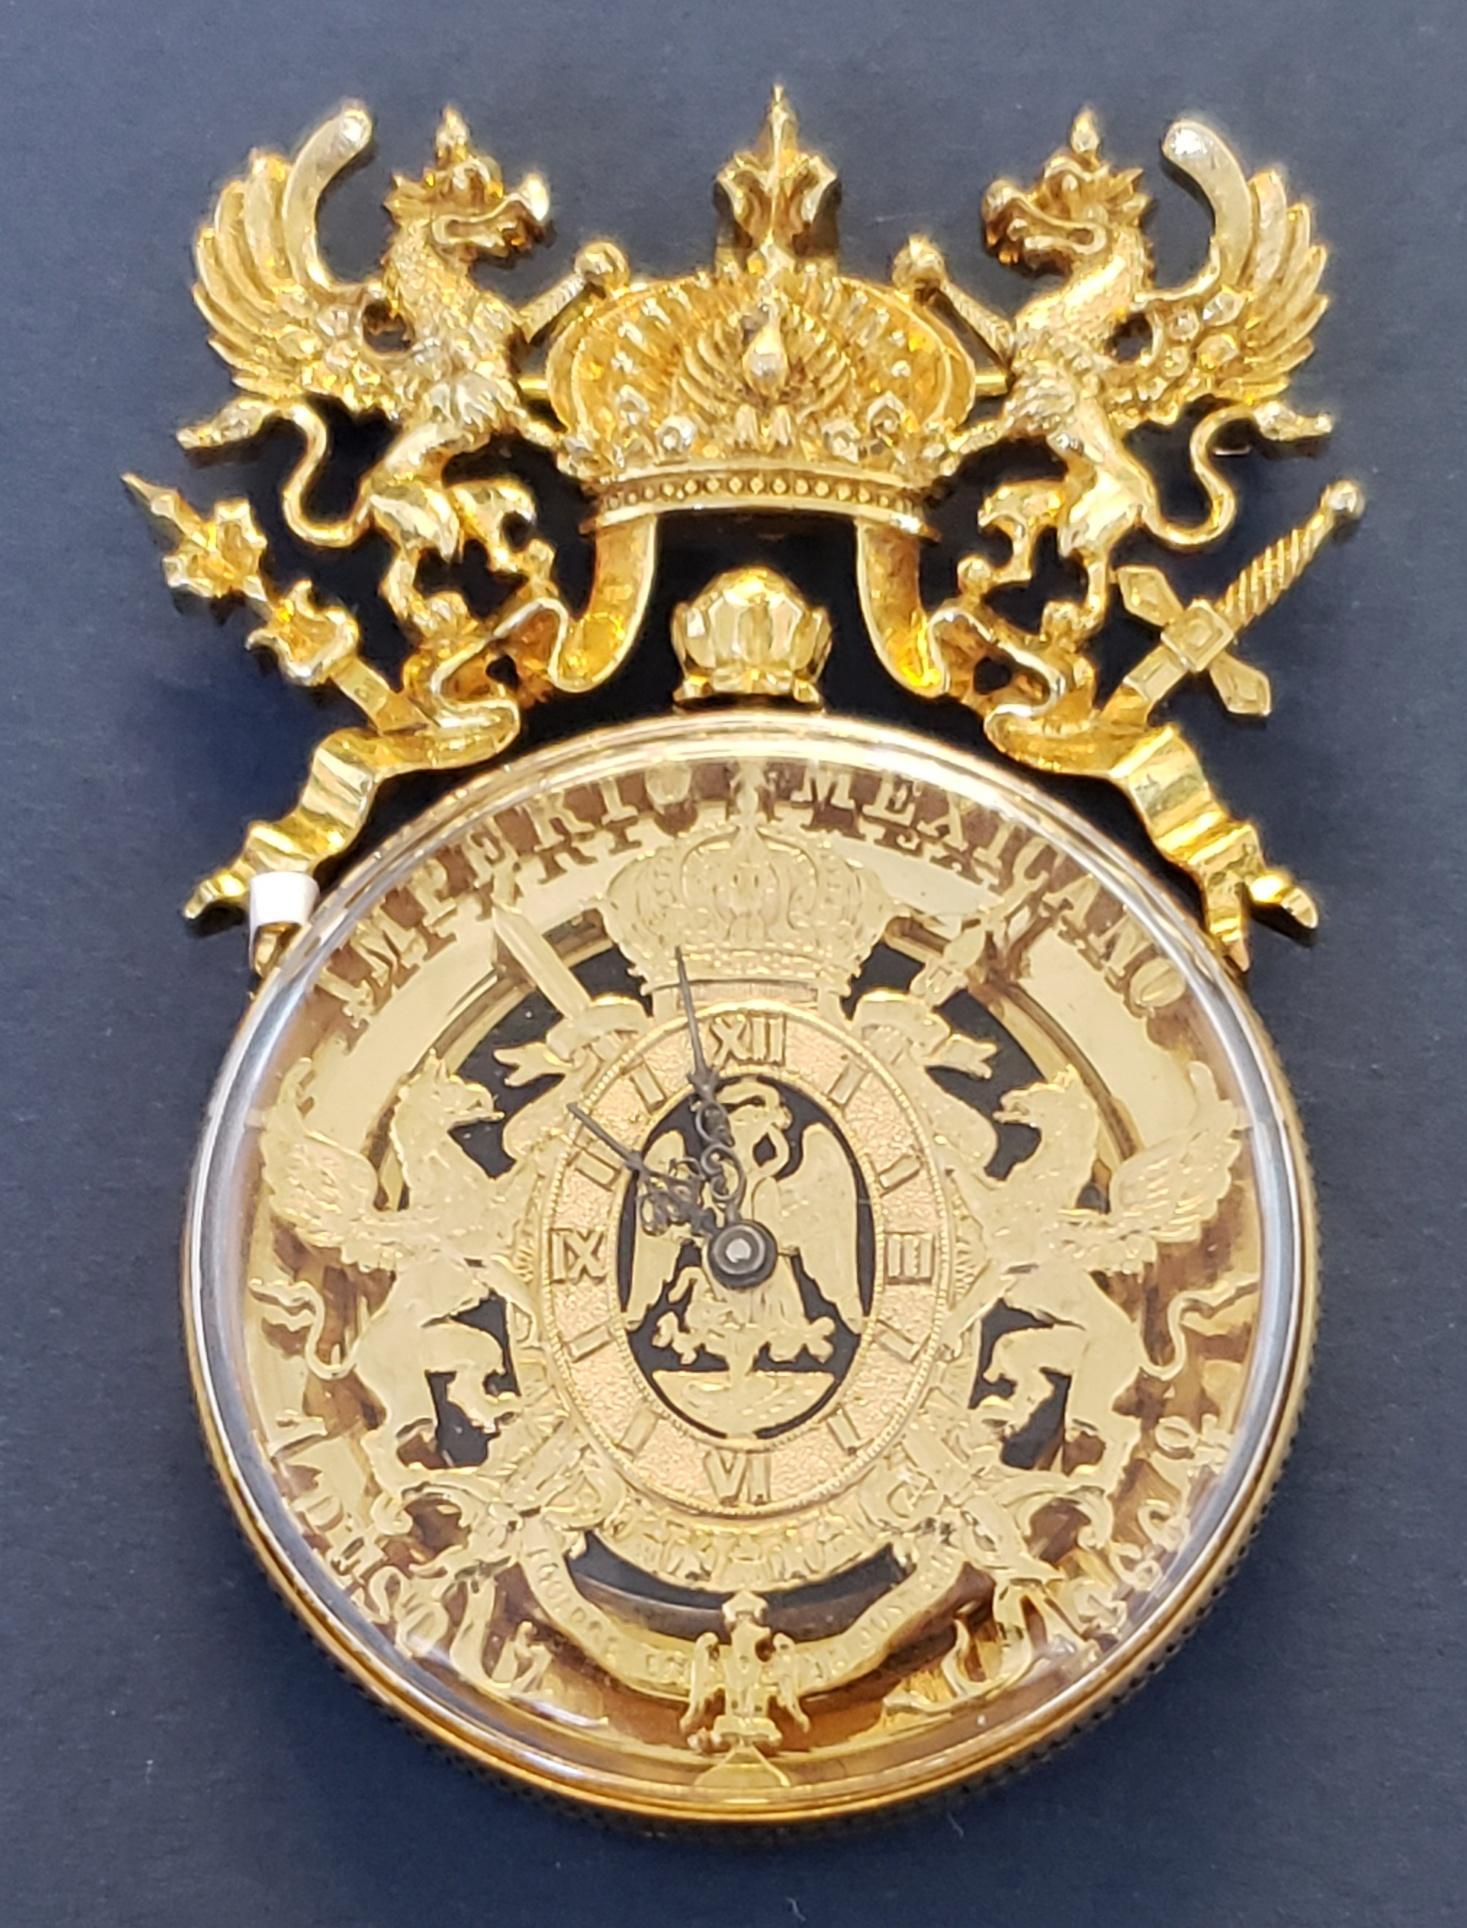 Paul Flato Imperio Mexicano 1866 One Peso Watch/Pin/Pendant 18K 44.4g For Sale 1